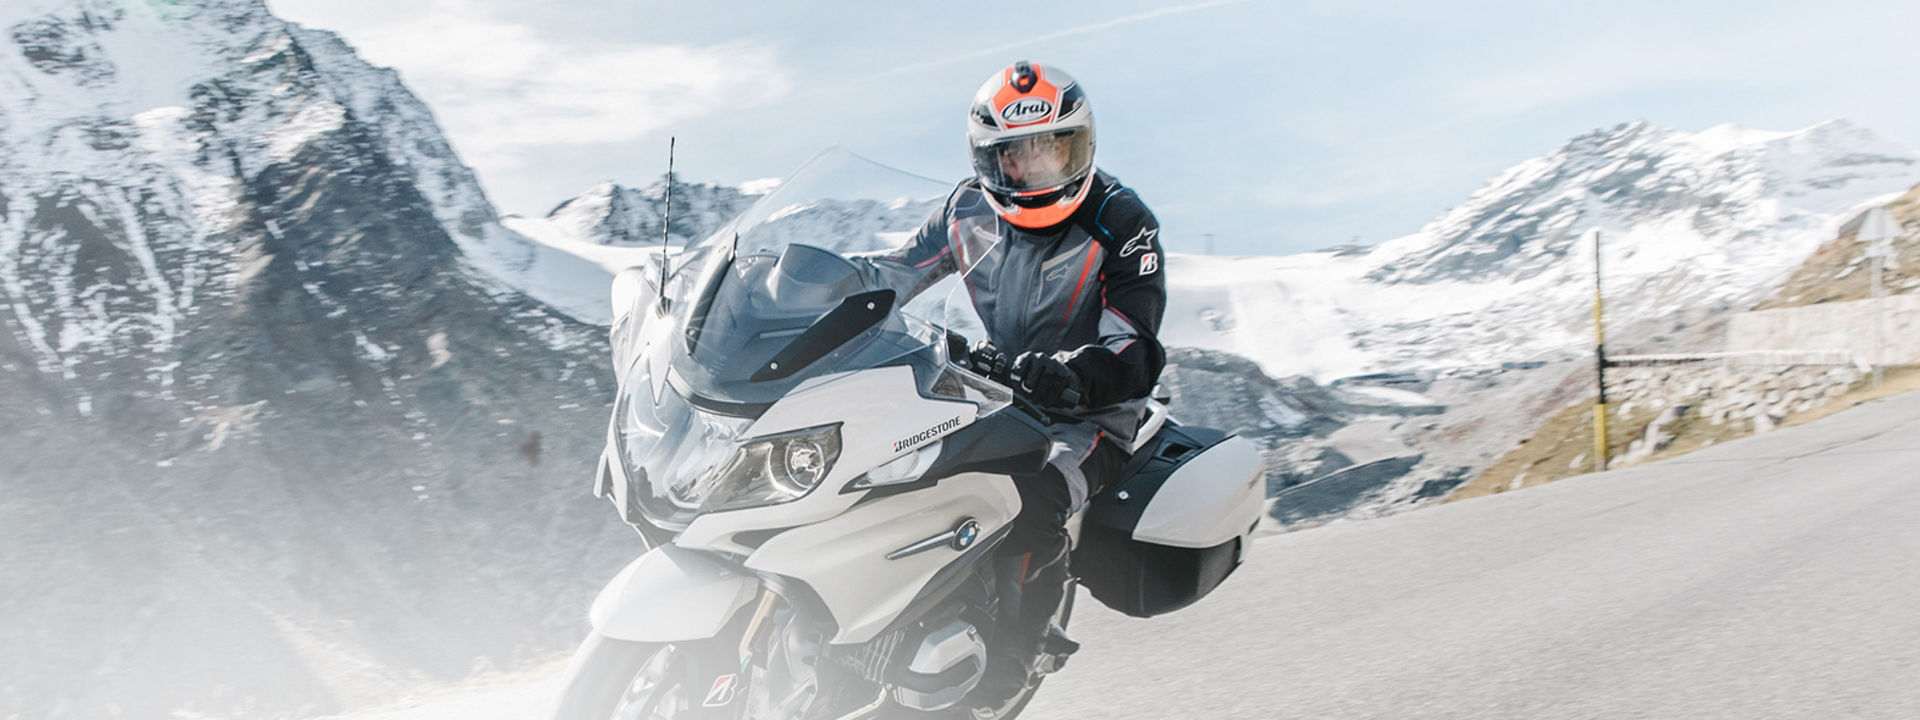 Na ovoj slici prikazan je motociklist koji vozi svoj motocikl s putnim gumama Bridgestone na slikovitoj cesti s planinama u pozadini.